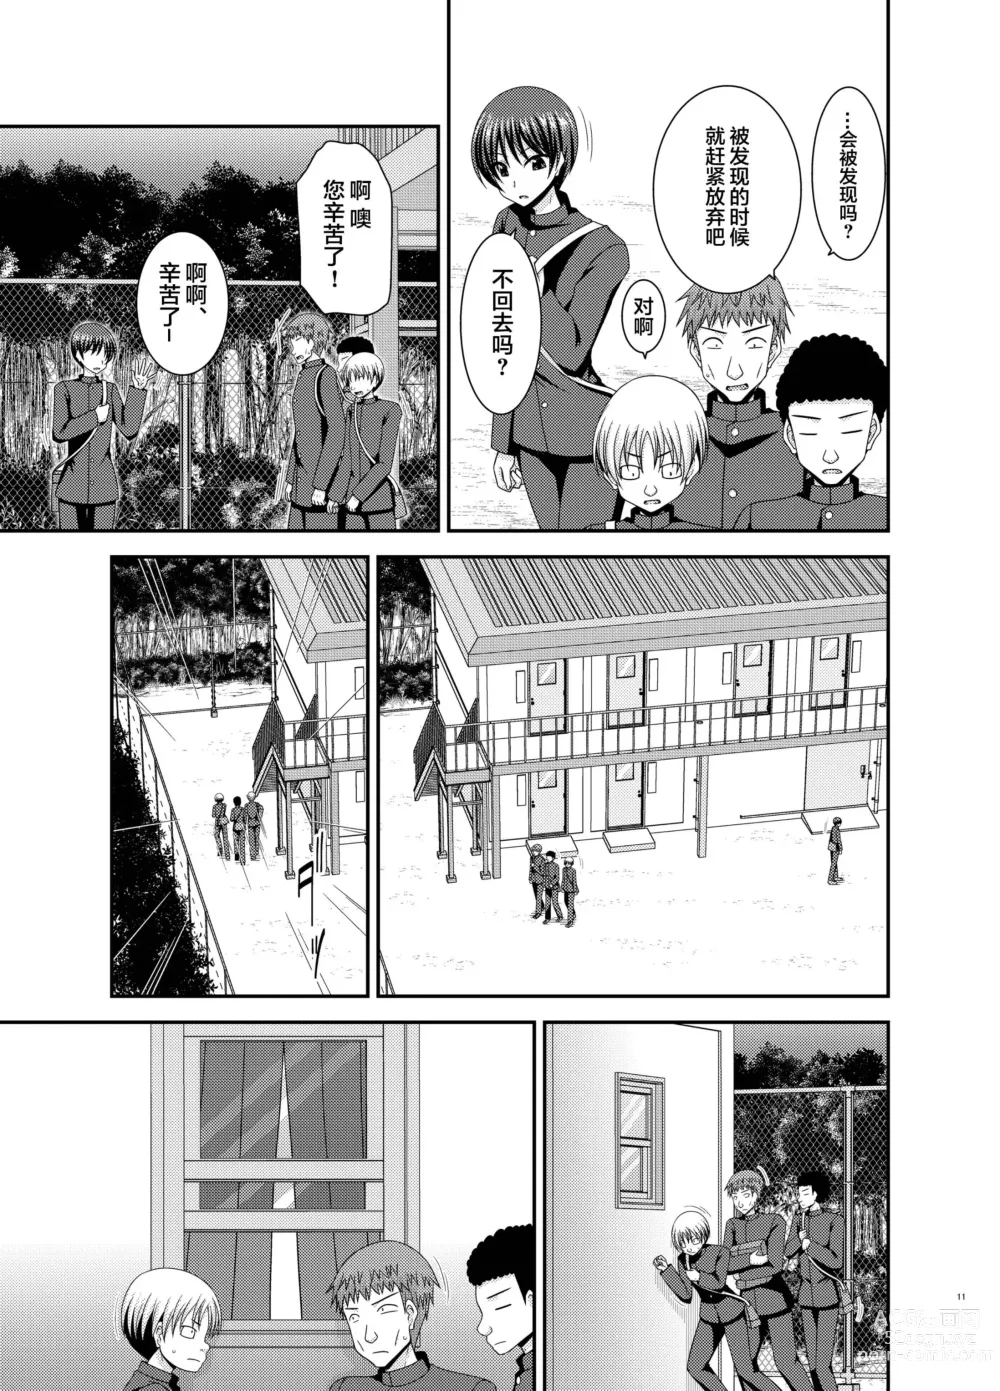 Page 8 of manga Nozokare Roshutsu Shoujo